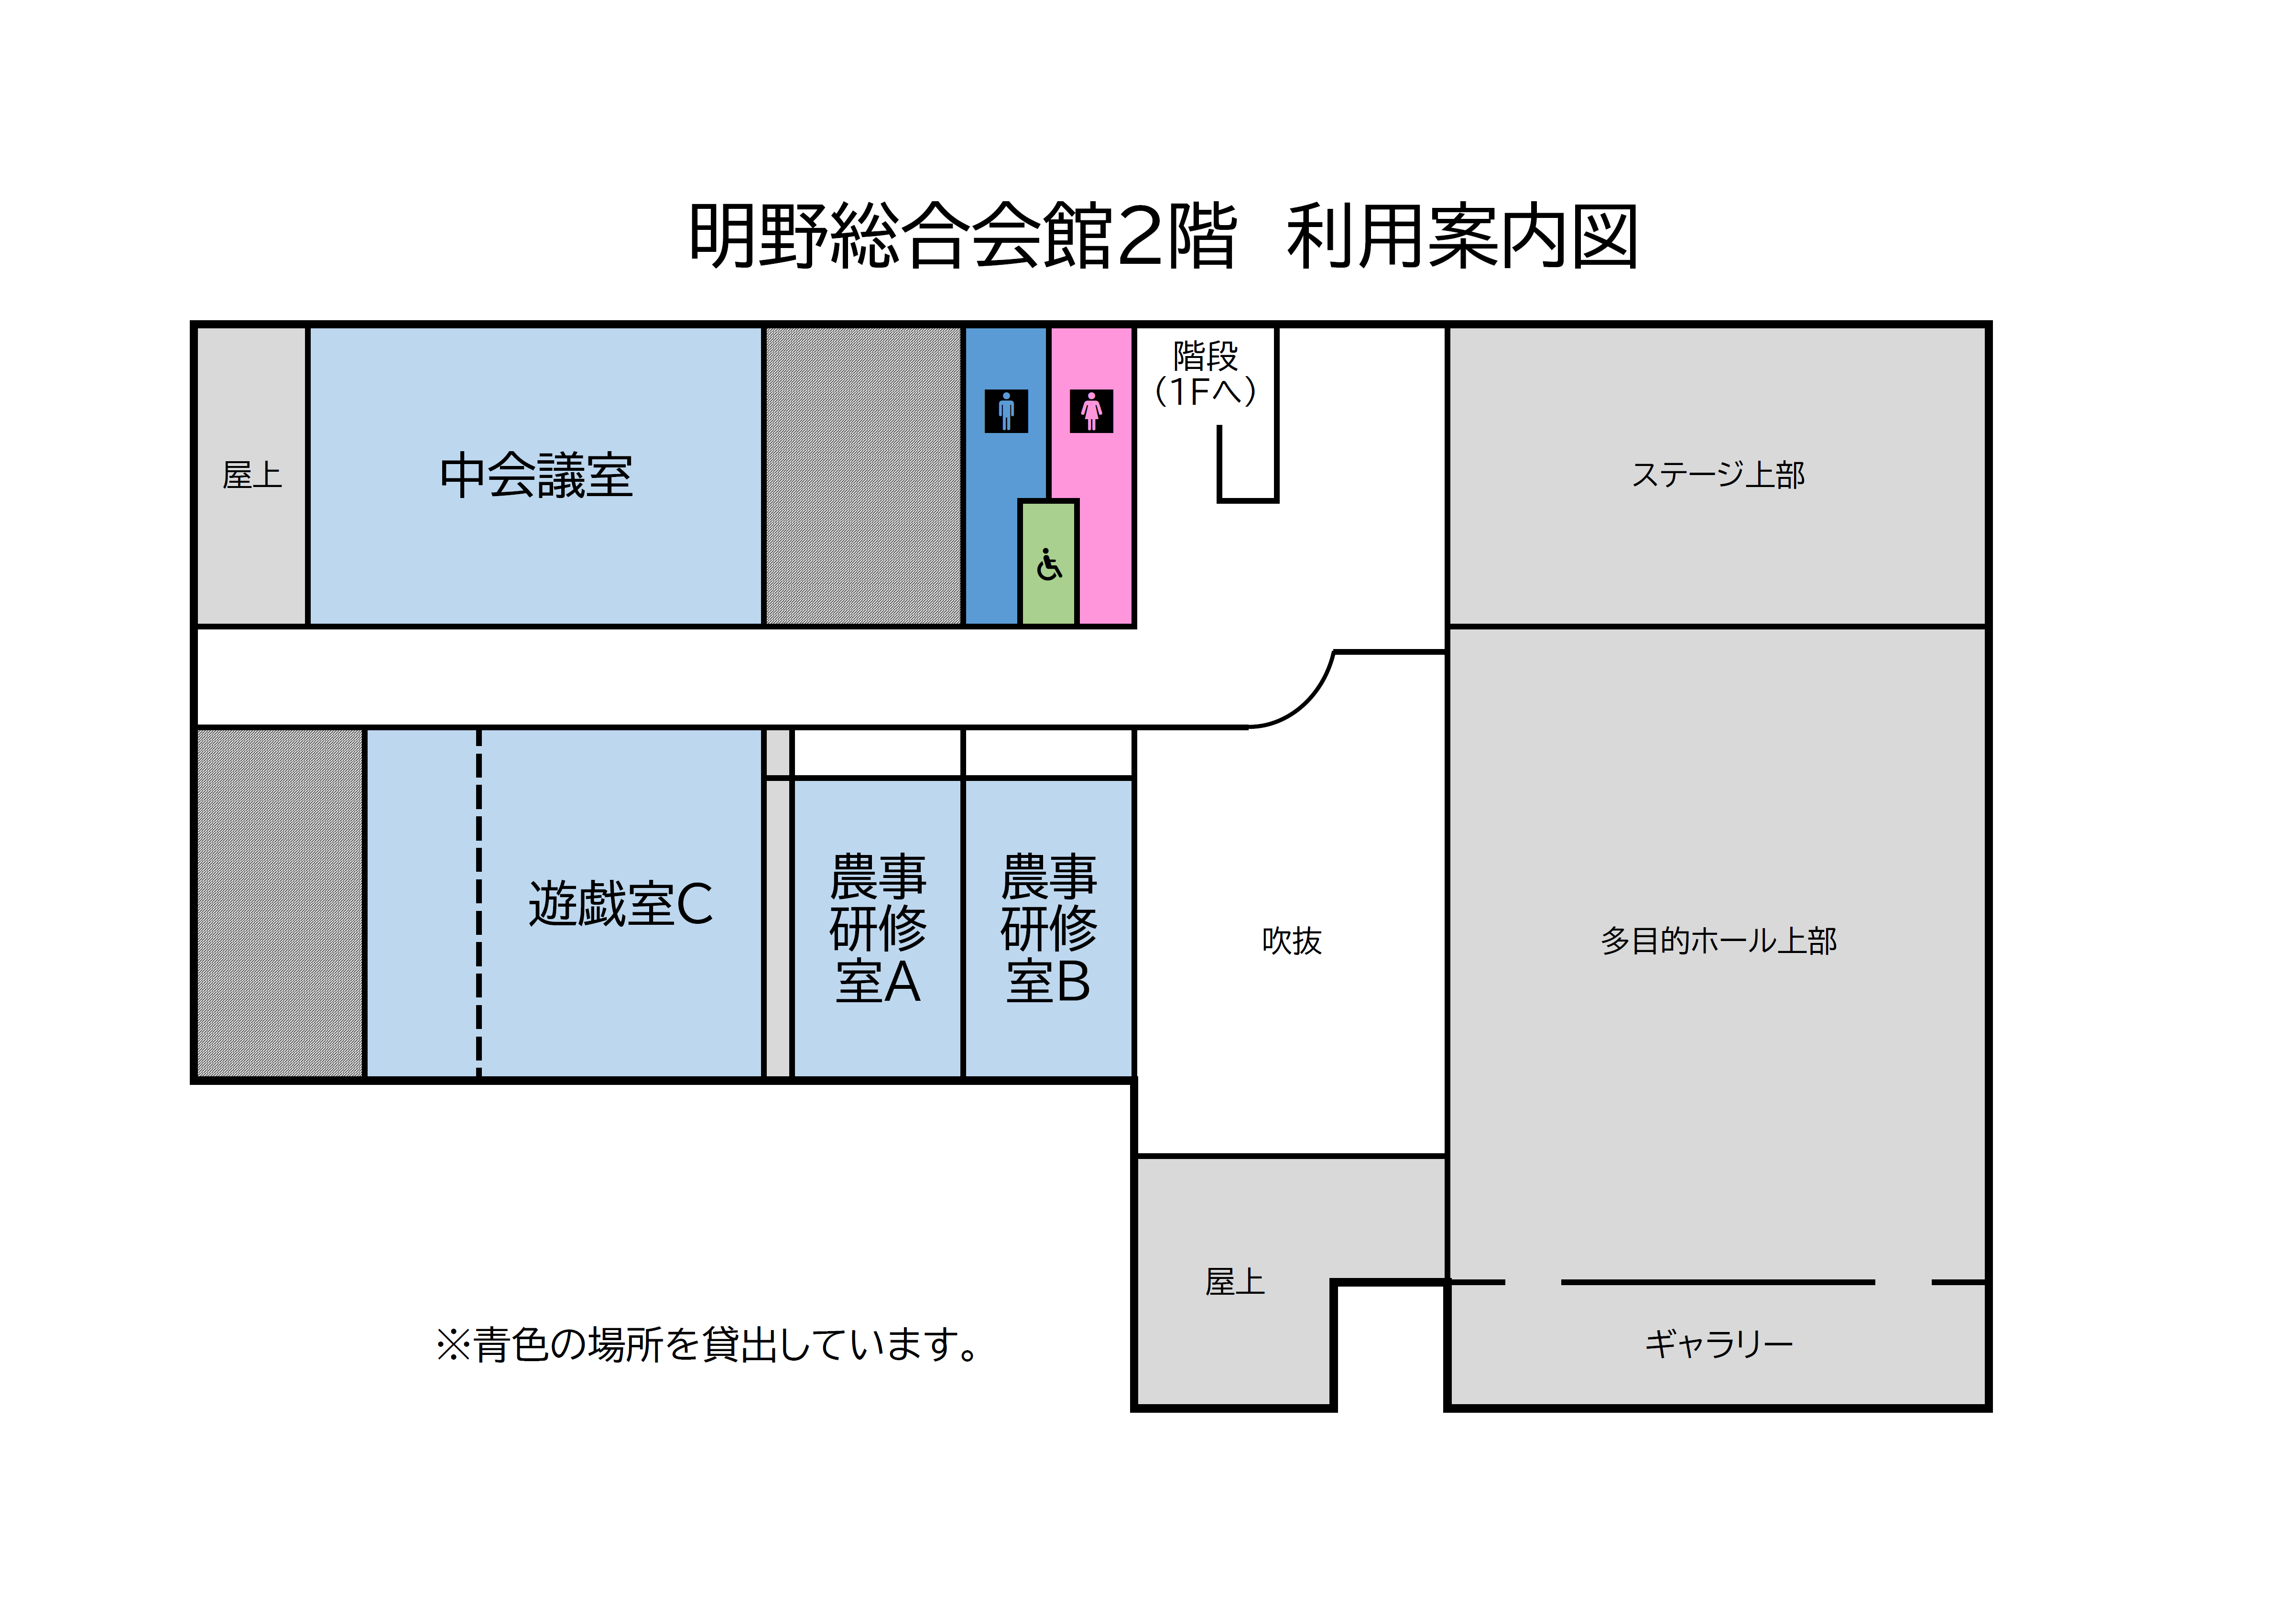 明野総合会館二階案内図